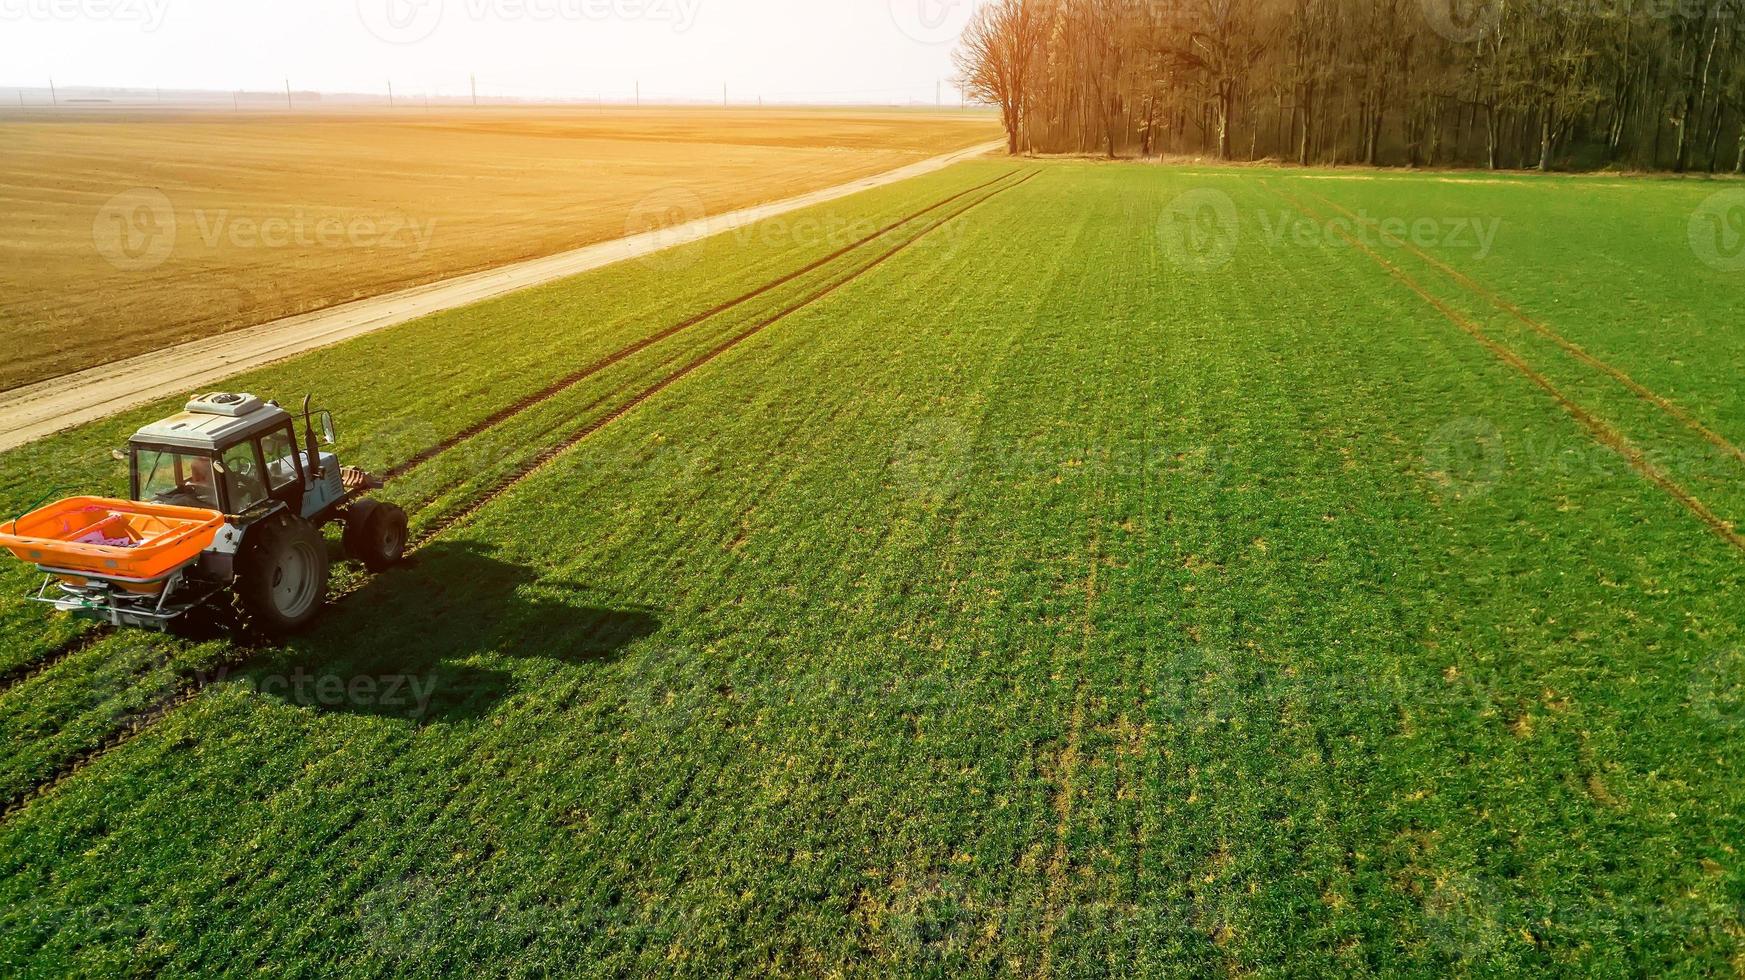 jordbruksskytte med quadrocopter. traktor på fältet foto